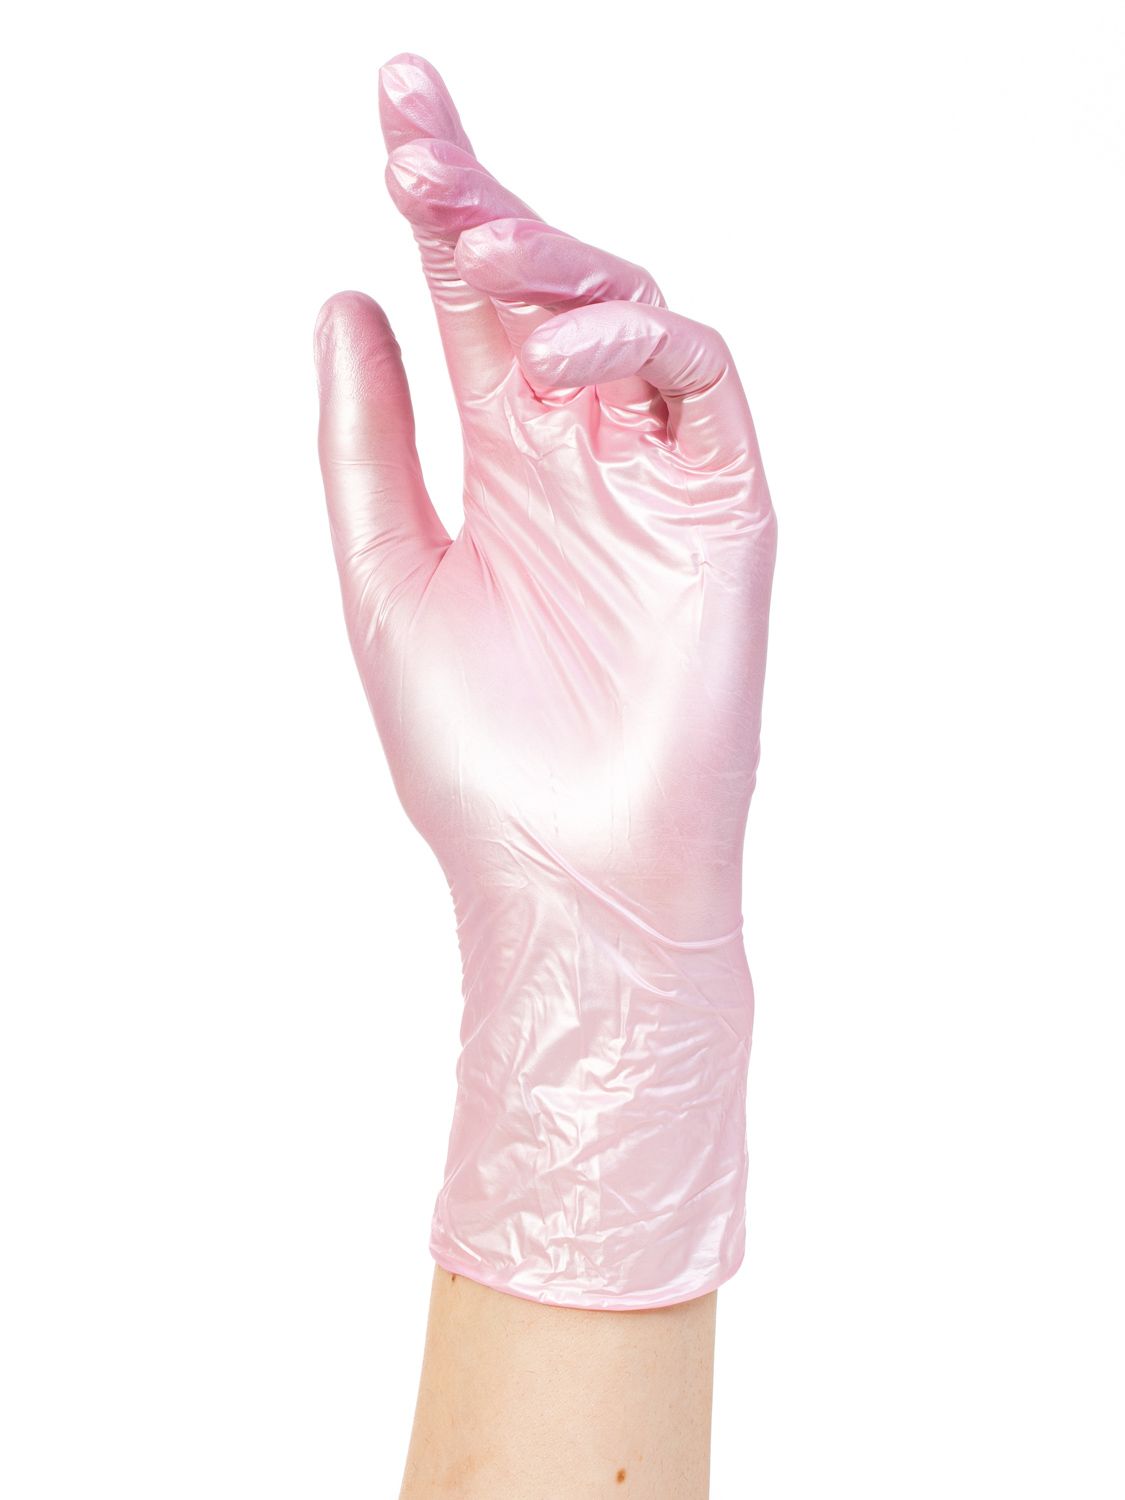 Перчатки нитриловые ADELE  розовый перламутр S 50пар